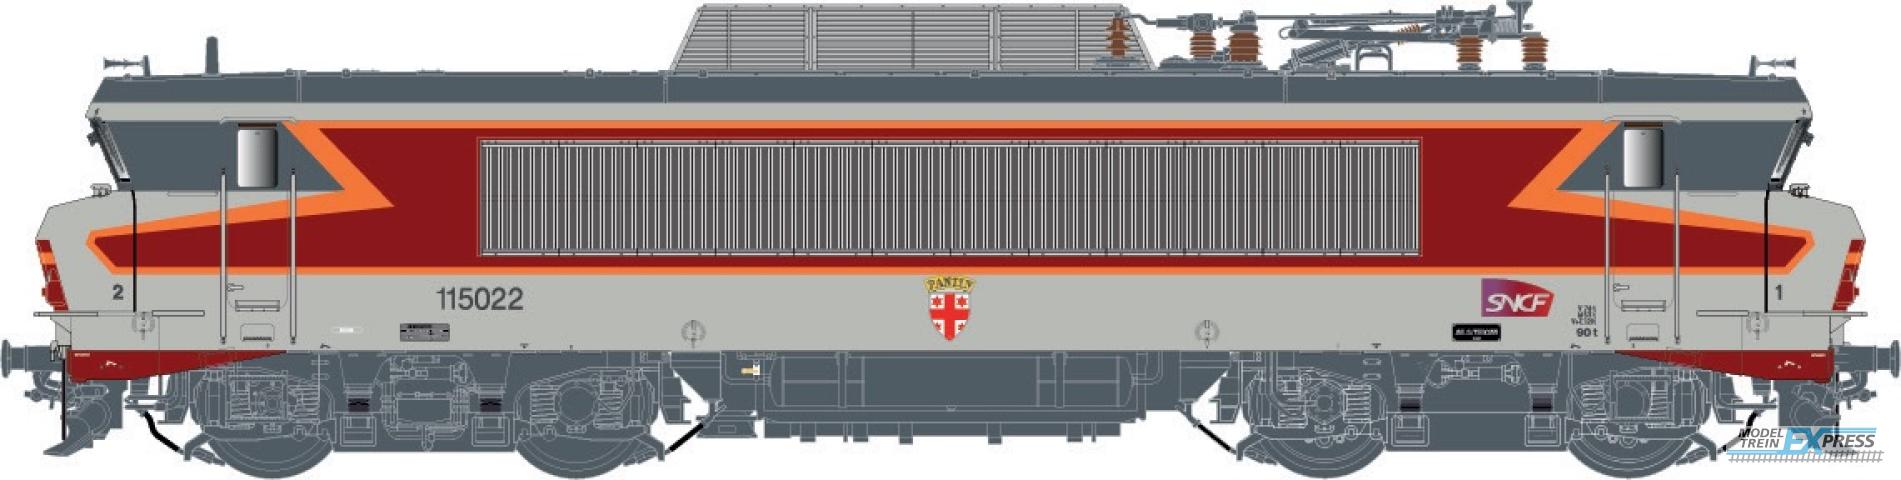 LS Models 10989S BB 15022, livrée "Arzens", gris béton,, 160 km/h, sigle Carmillon, blason Pantin, dépôt d'Archères  /  Ep. VI  /  SNCF  /  HO  /  AC SOUND  /  1 P.